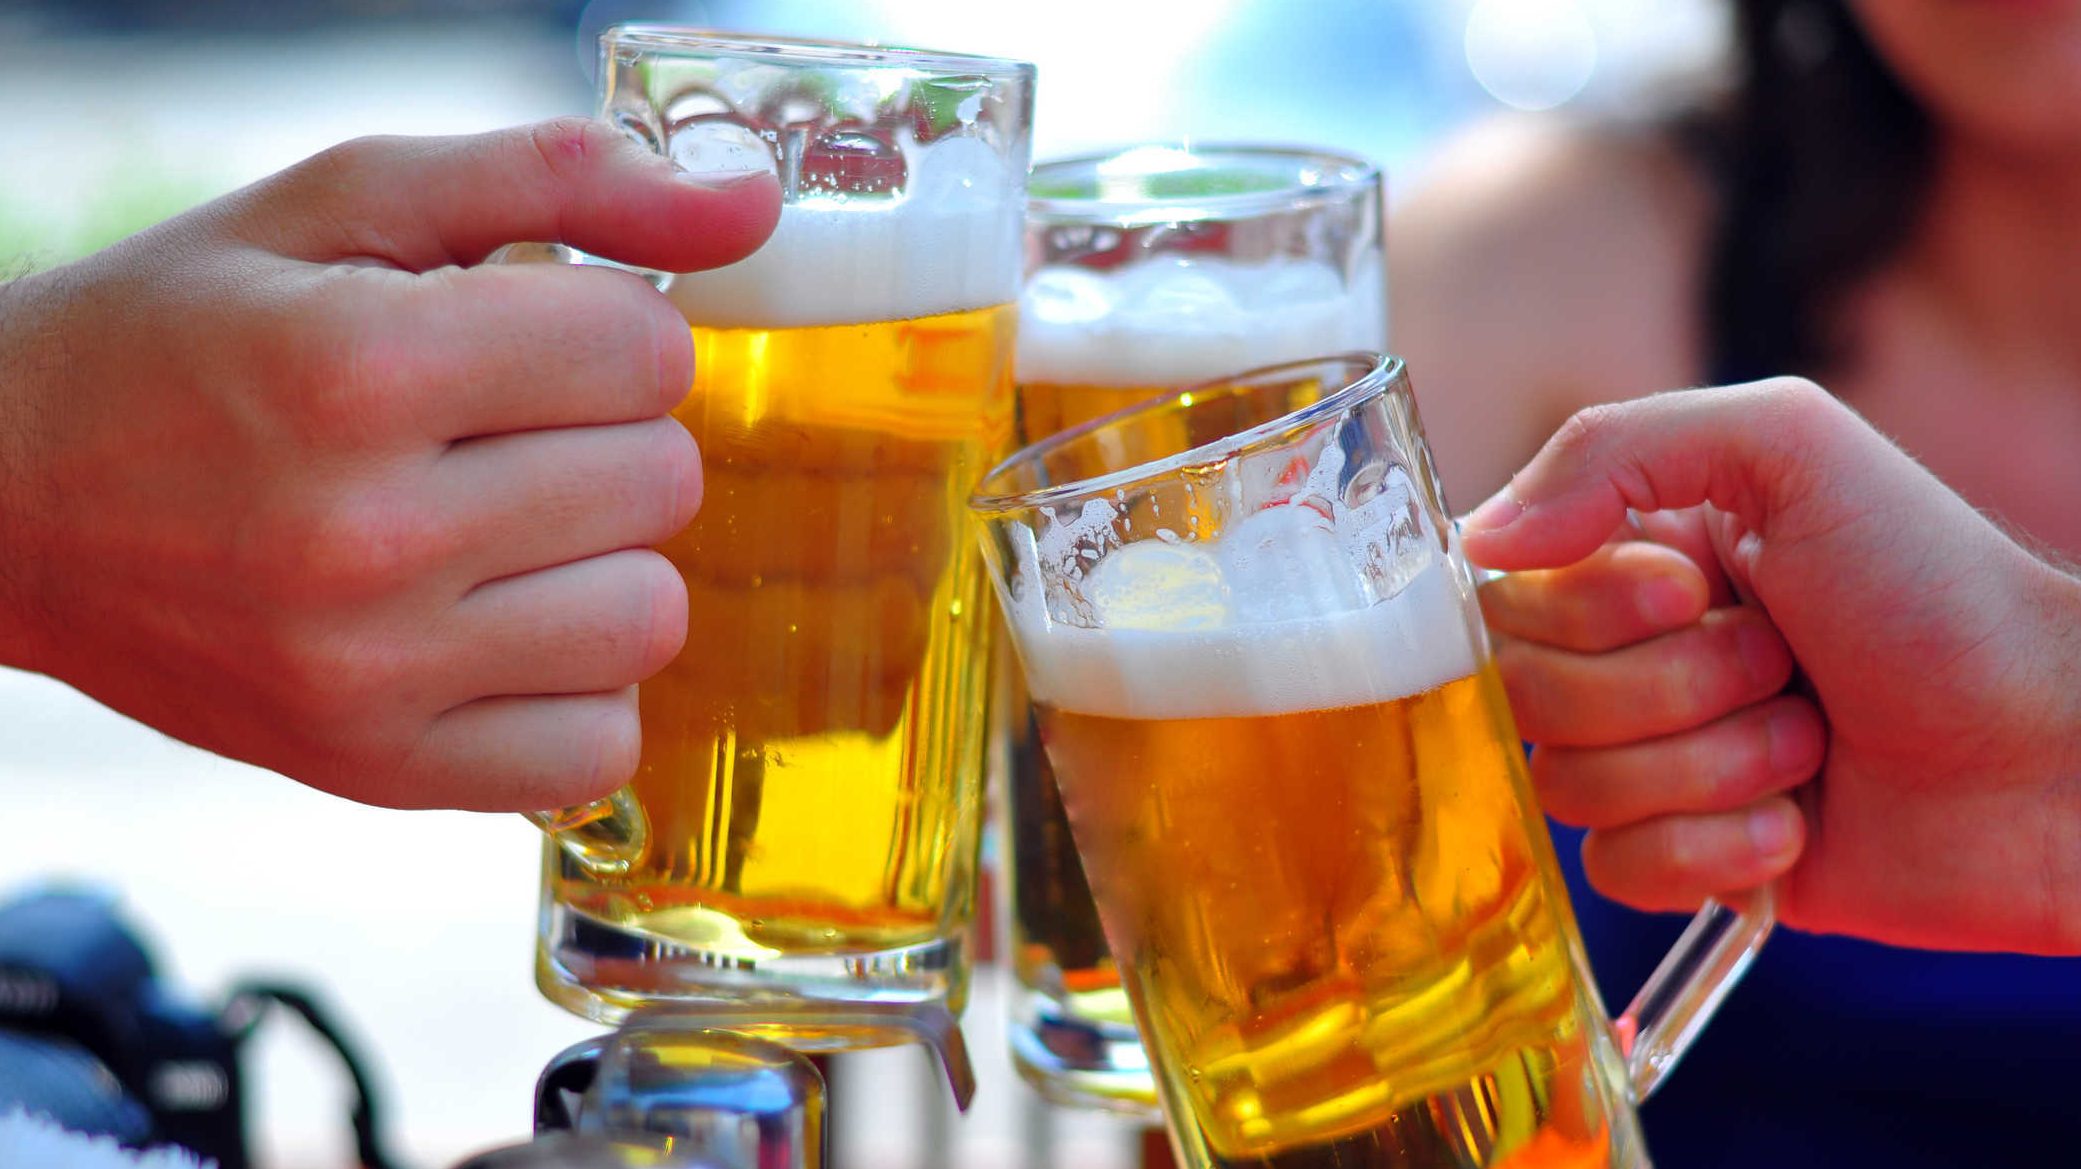   Khoa học chứng minh, uống khoảng 18 lon bia mỗi tuần có thể giảm tuổi thọ của bạn  